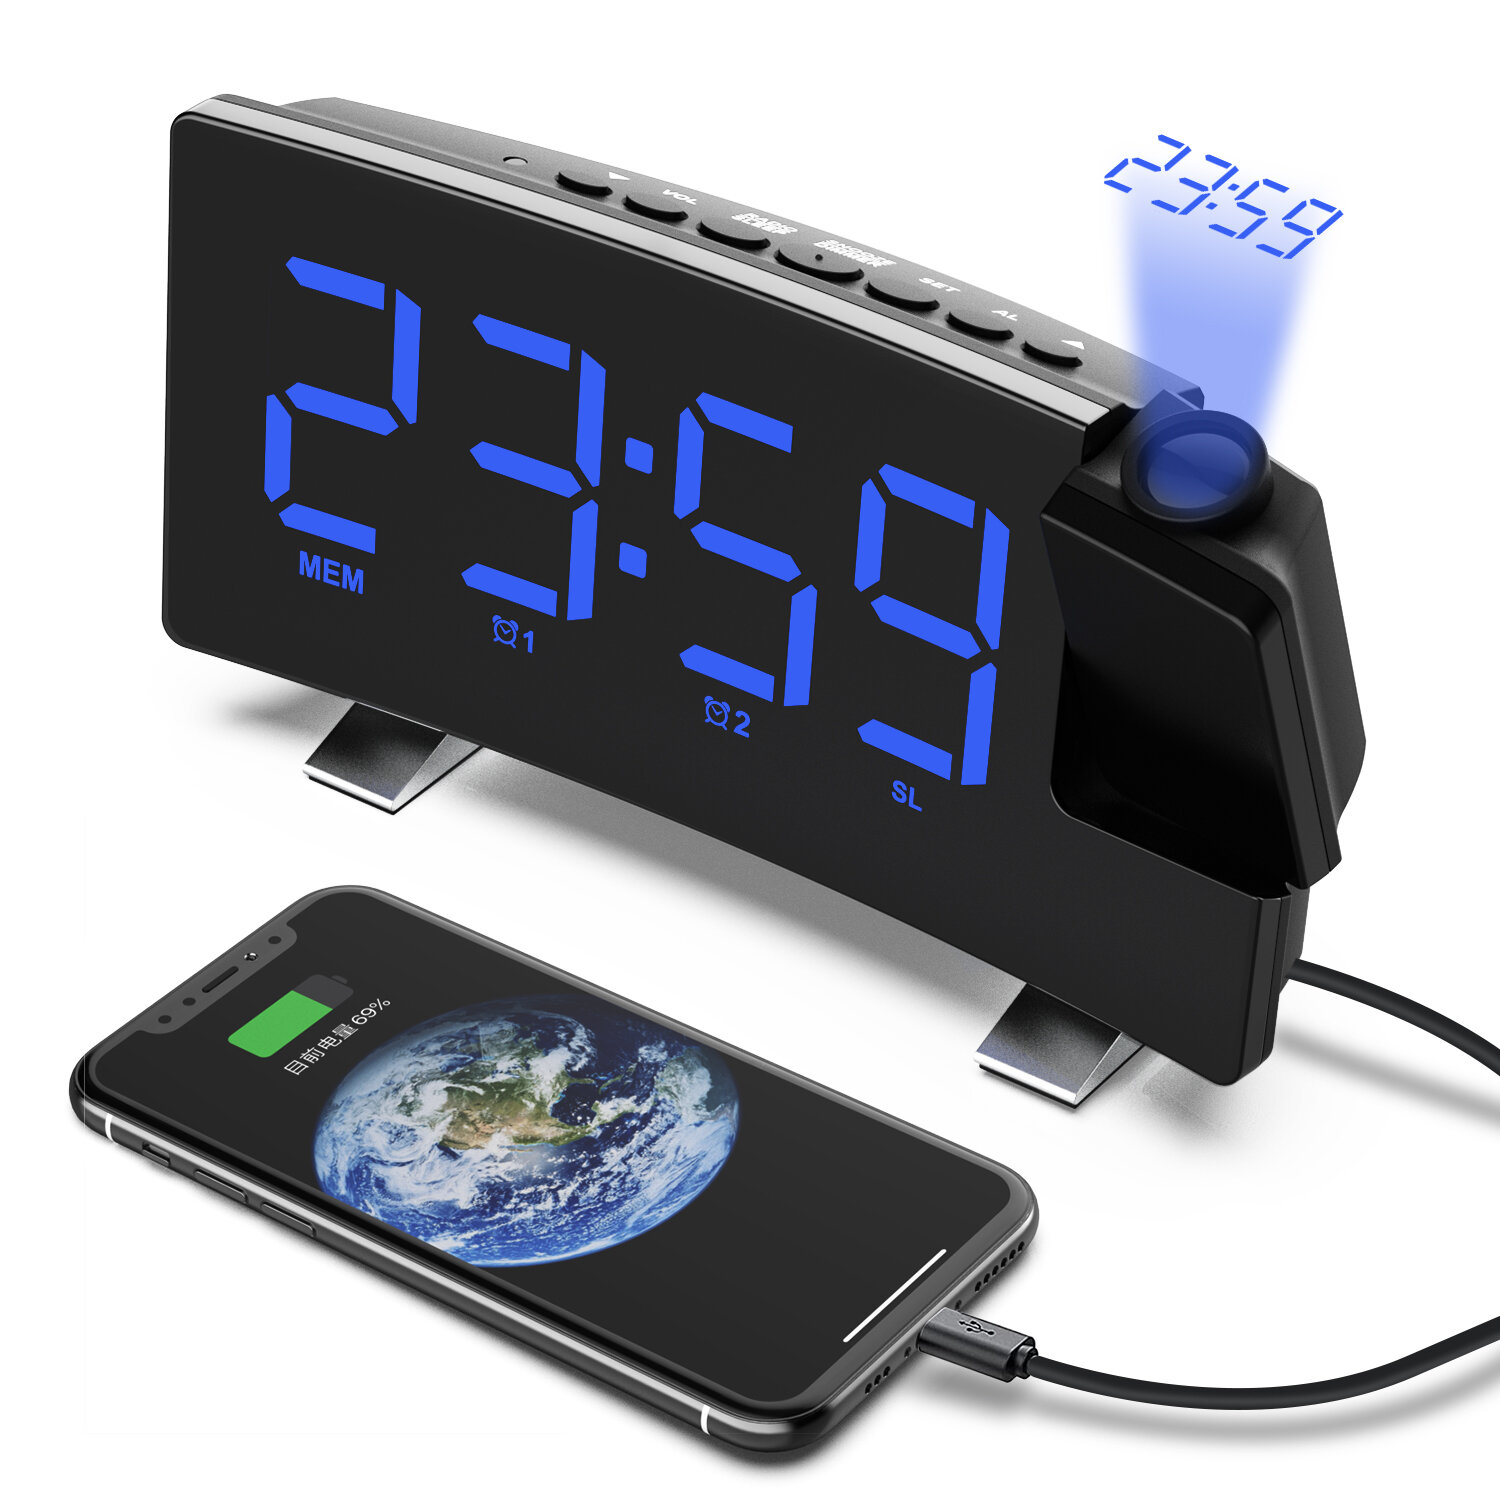 Στα 22.25 € από αποθήκη Κίνας | AGSIVO 8 Inch Projection Alarm Clock with 180° Rotatable Projector / FM Radio / Snooze / 3-Level Brightness Dimmer / Curved Clear LED Display / USB Charger For Bedroom Living Room